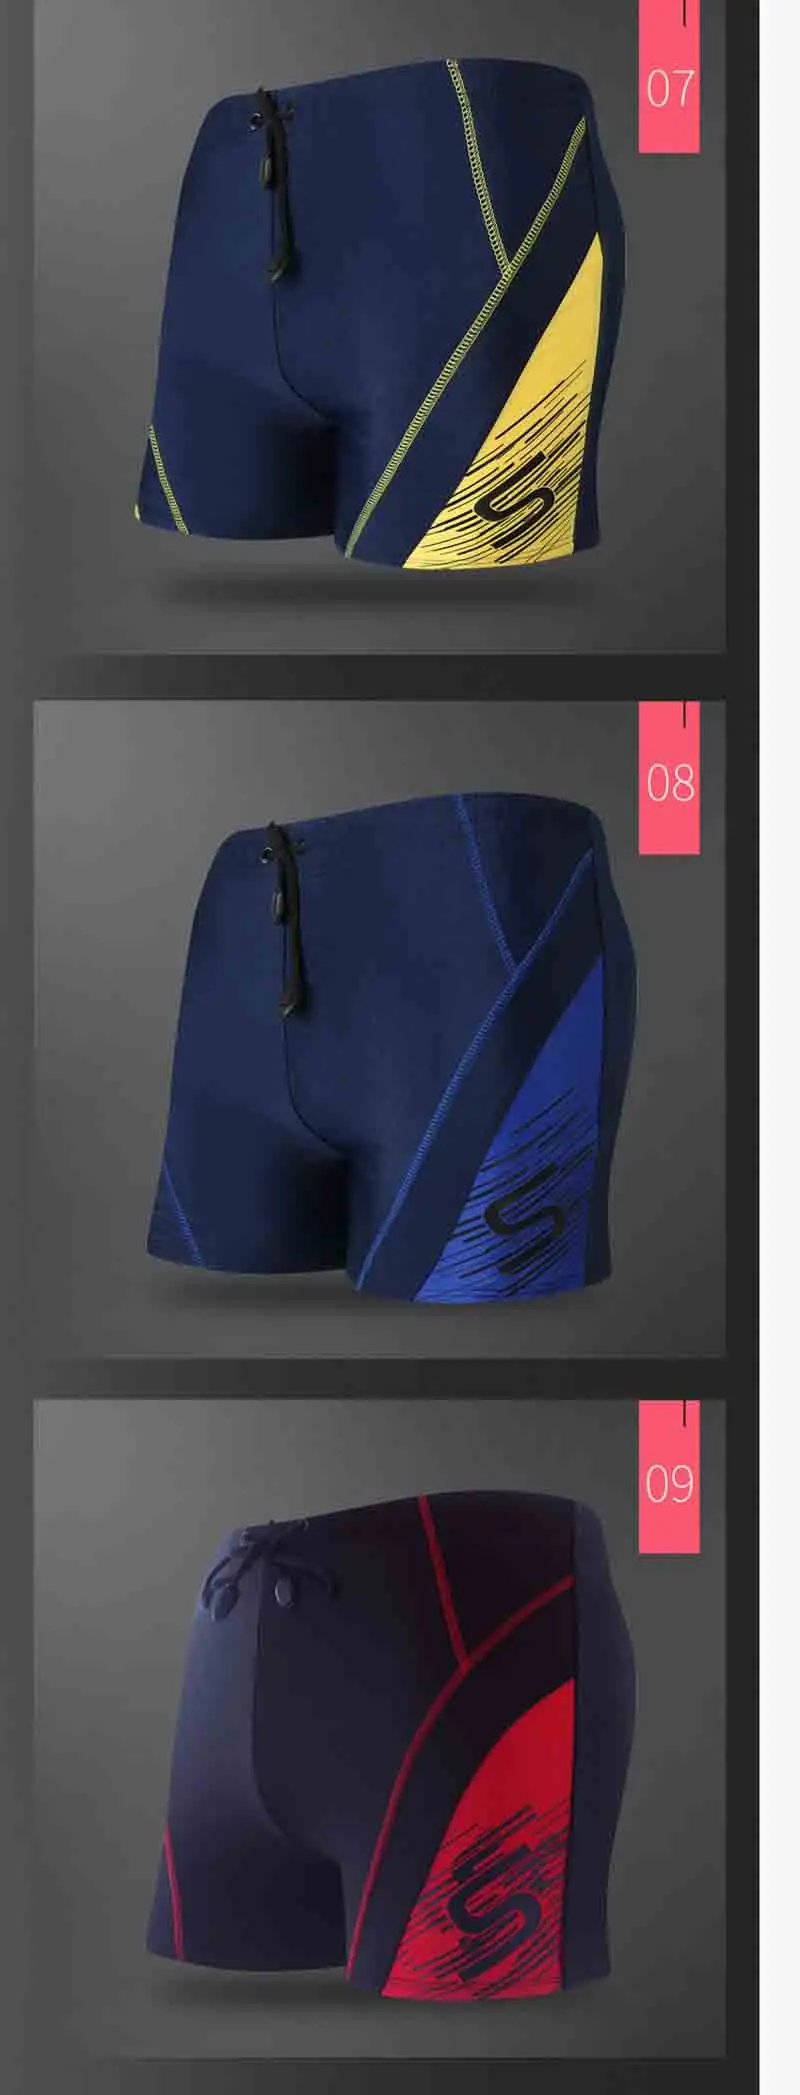 2019 новая одежда для плавания мужские сексуальные плавки sunga сексуальный купальник мужские s плавки пляжные шорты mayo de praia ho мужские s maillot de bain